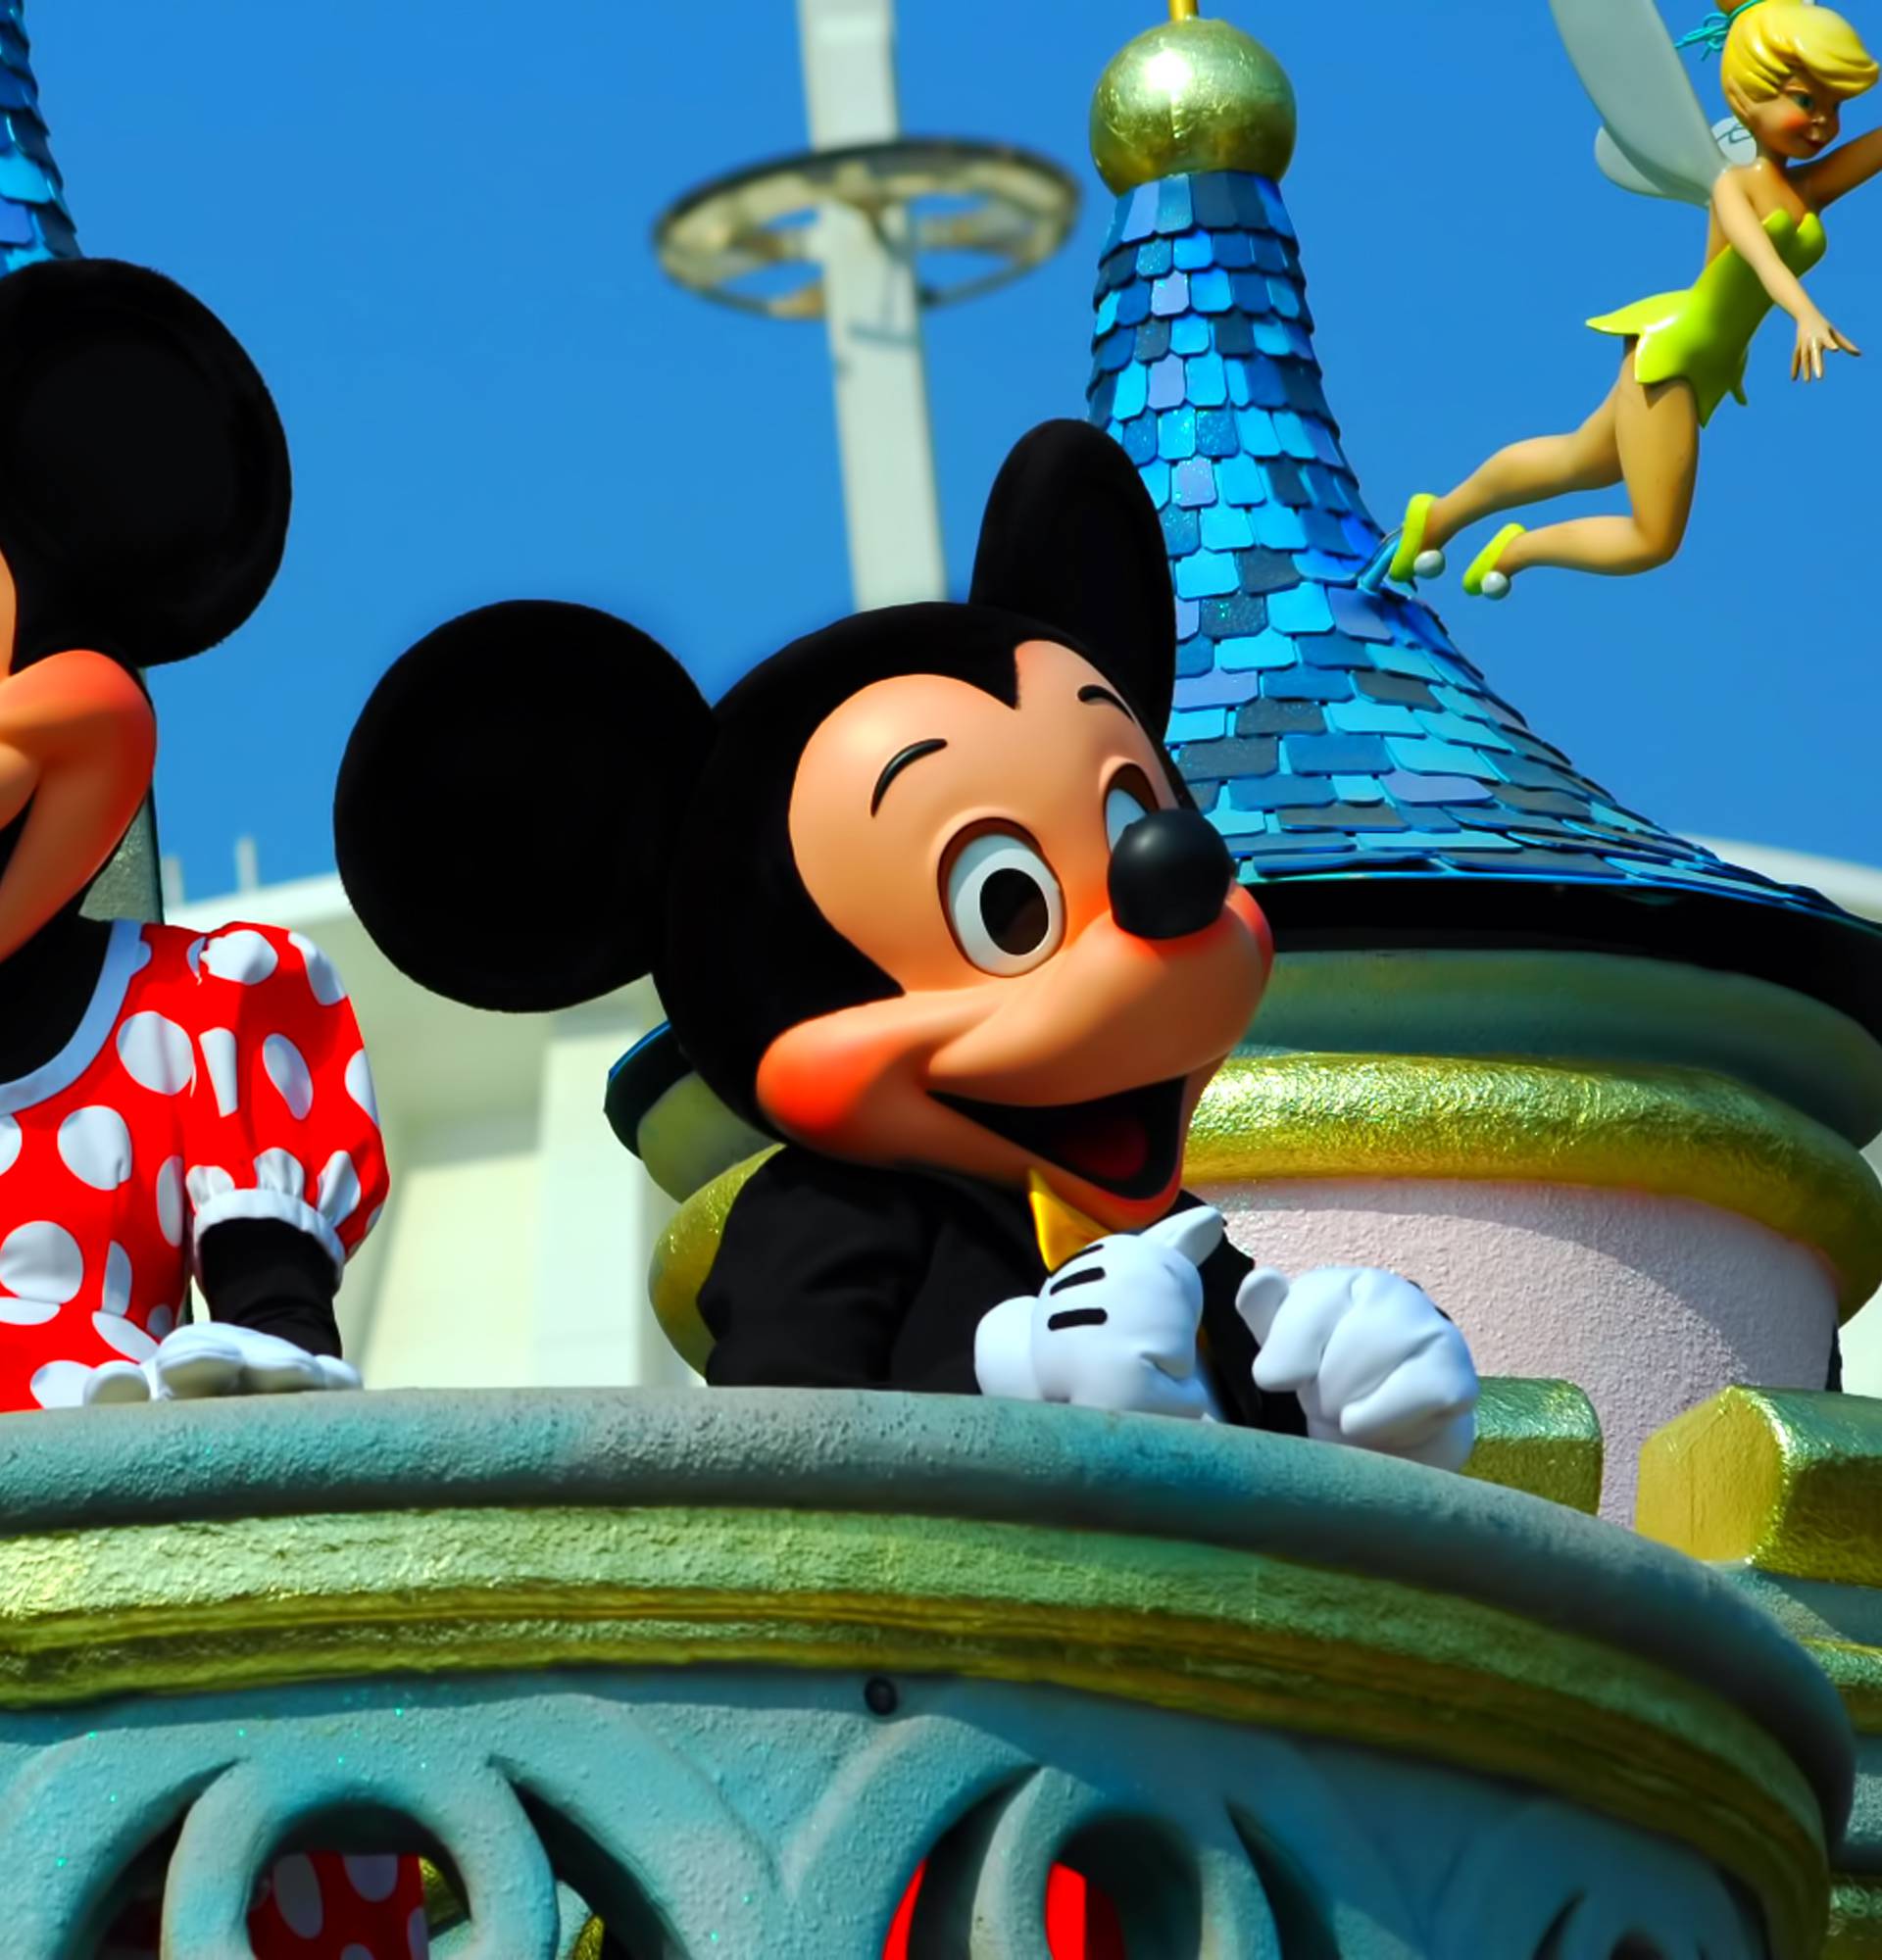 Streaming platforma Disney+ stiže u Hrvatsku već ovog ljeta